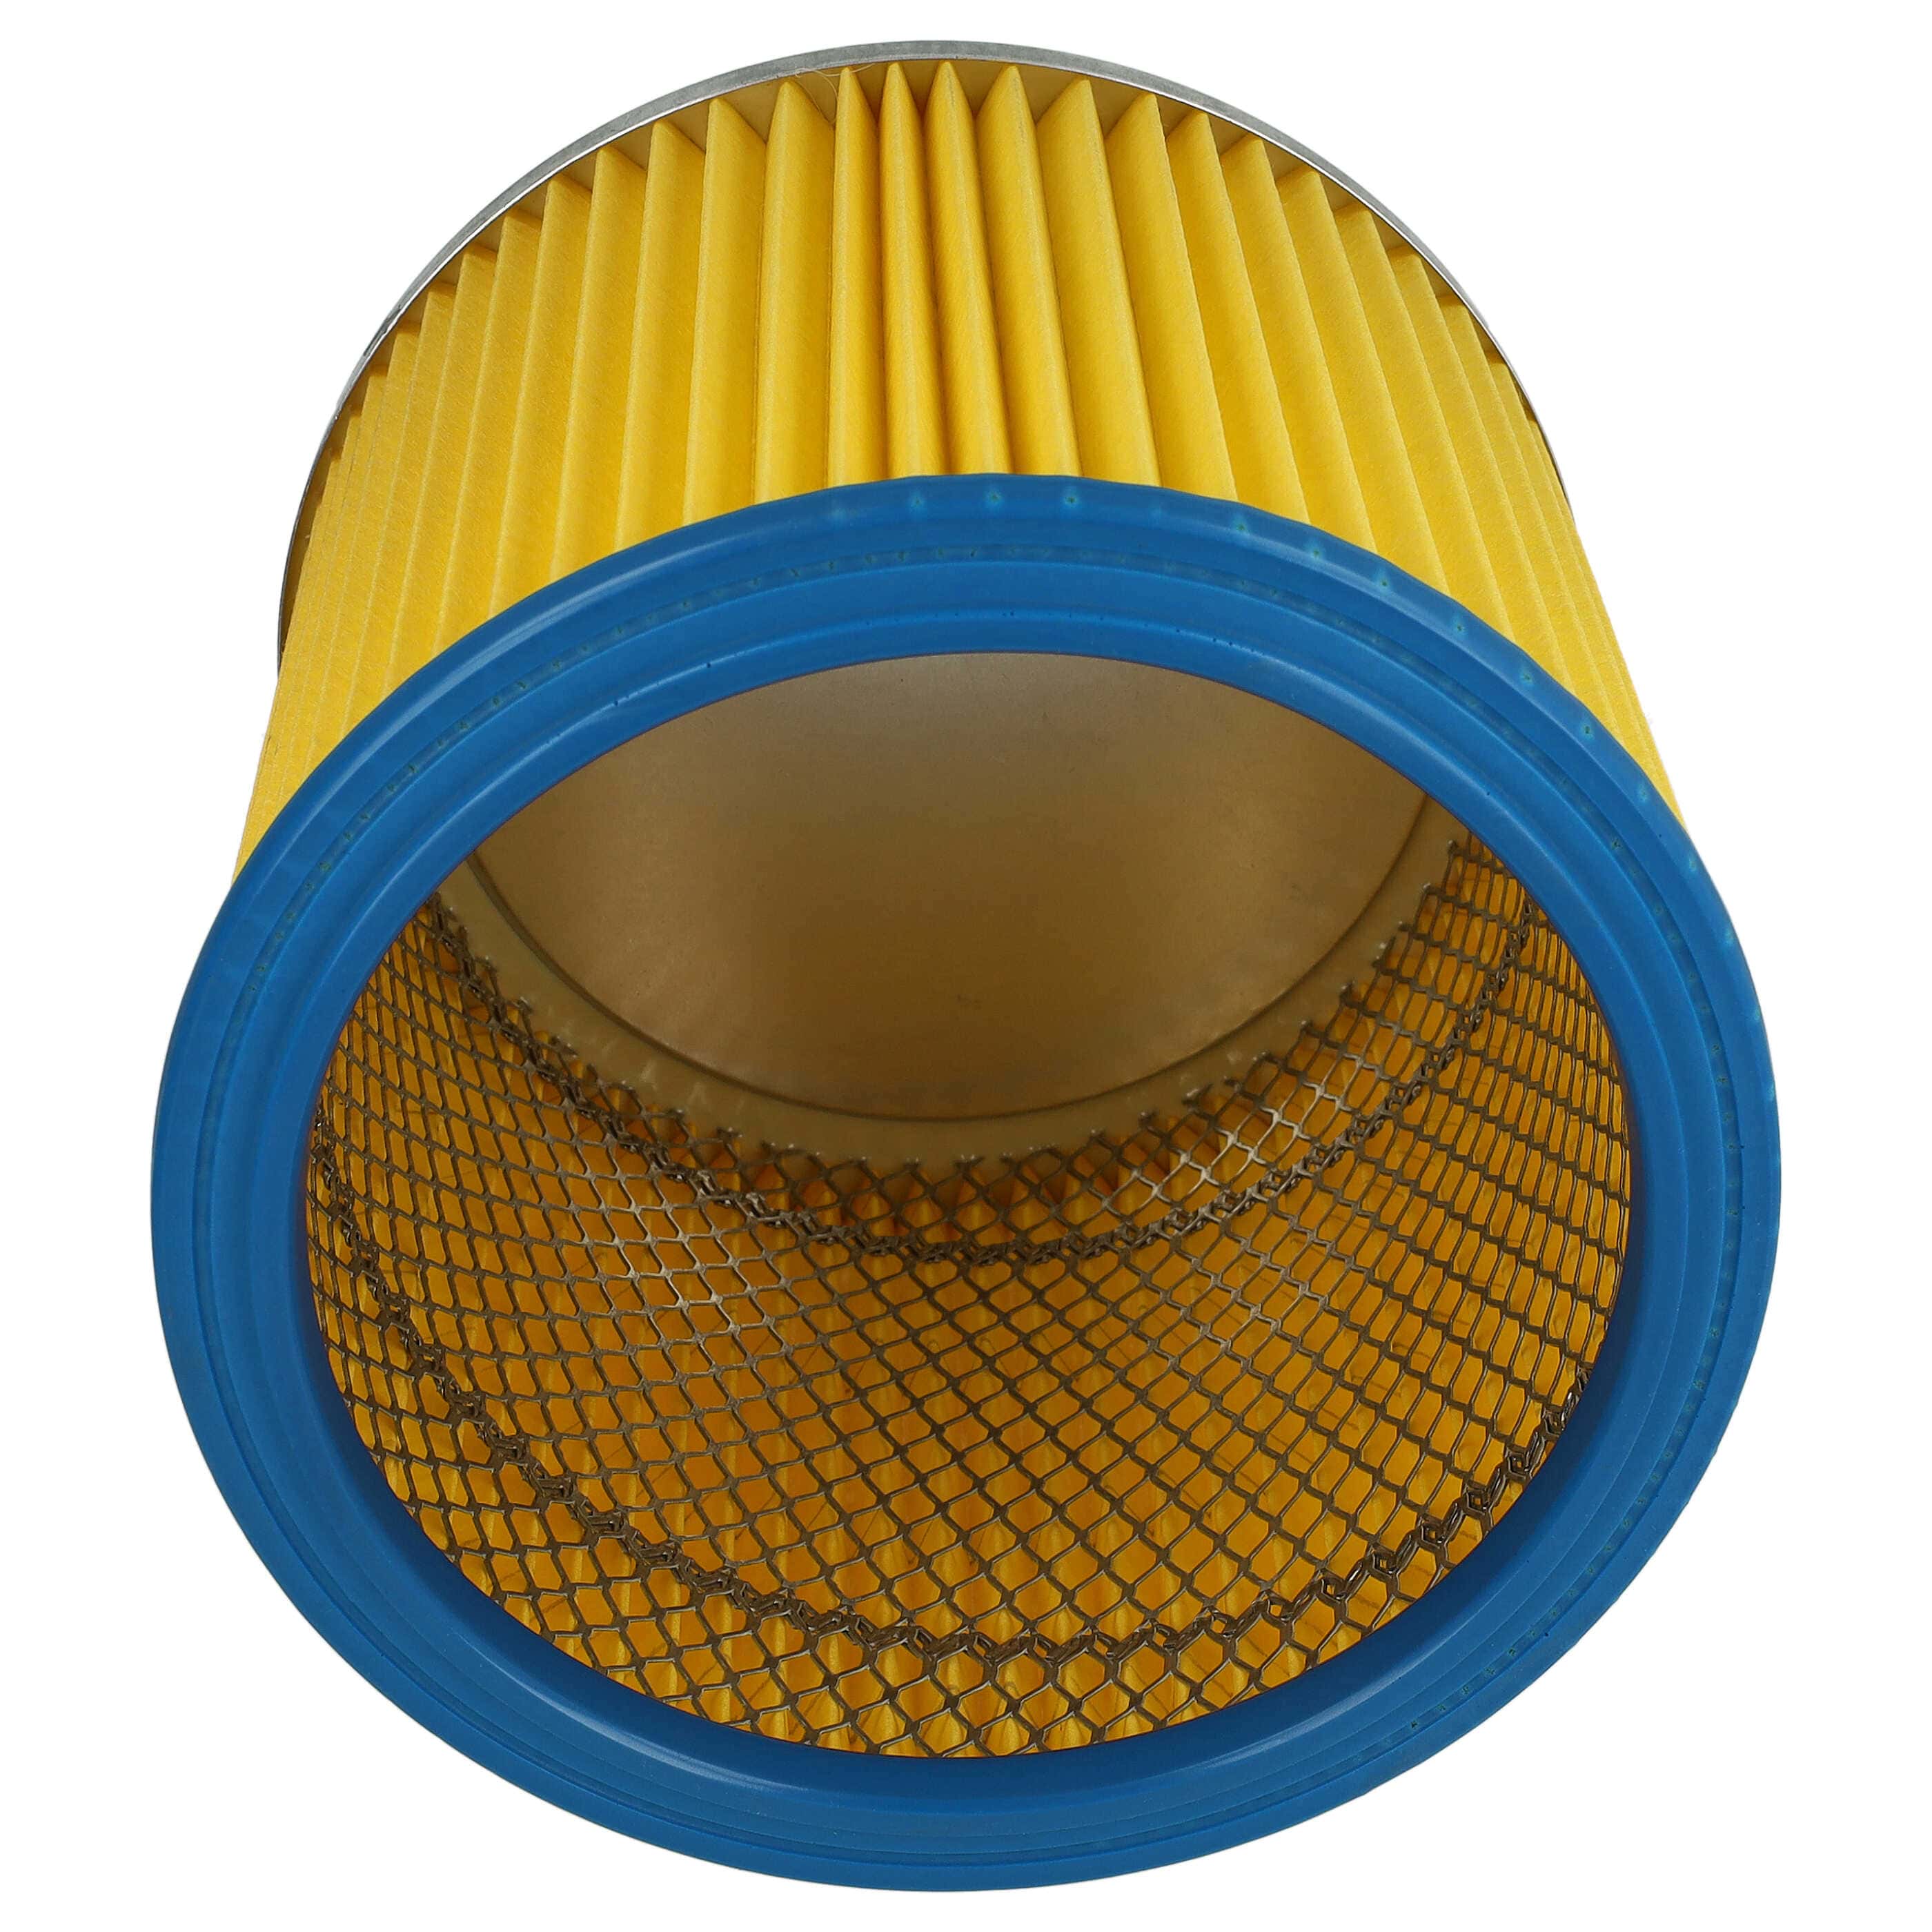 Filtr do odkurzacza LIV zamiennik Einhell 2351110 - wkład filtracyjny, niebieski / żółty